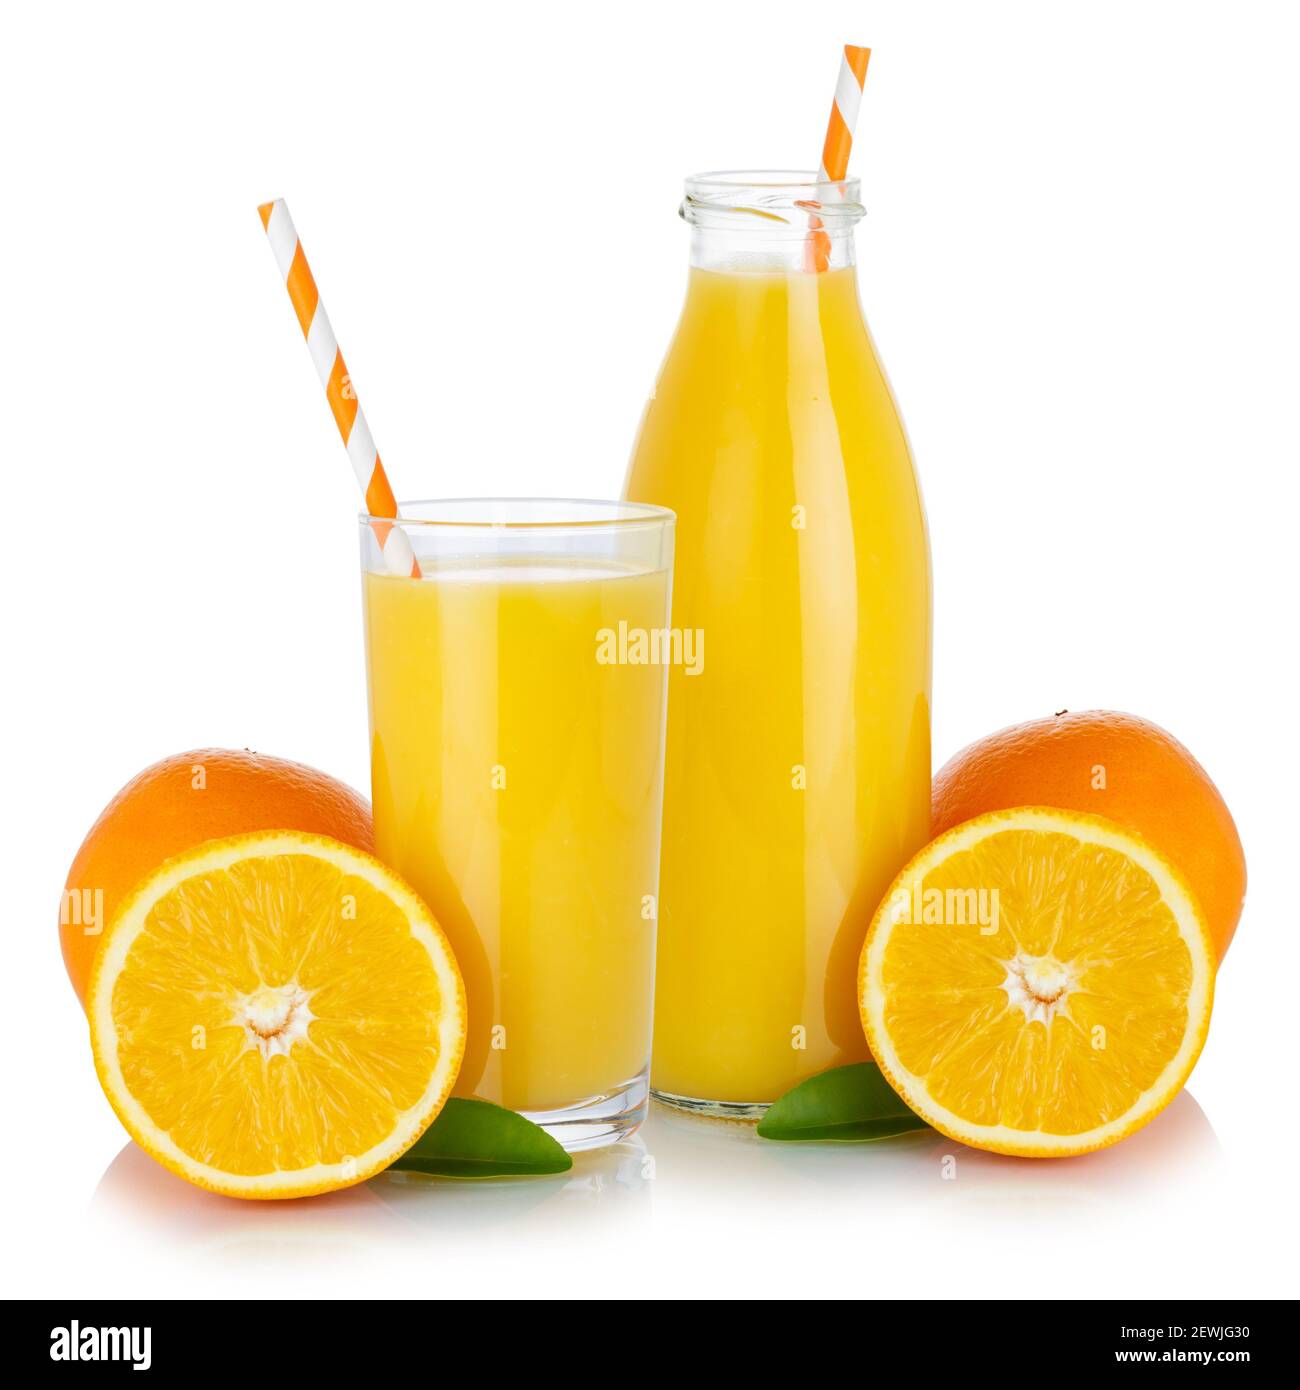 Fresh orange fruit juice drink smoothie oranges glass and bottle isolated on a white background. Stock Photo